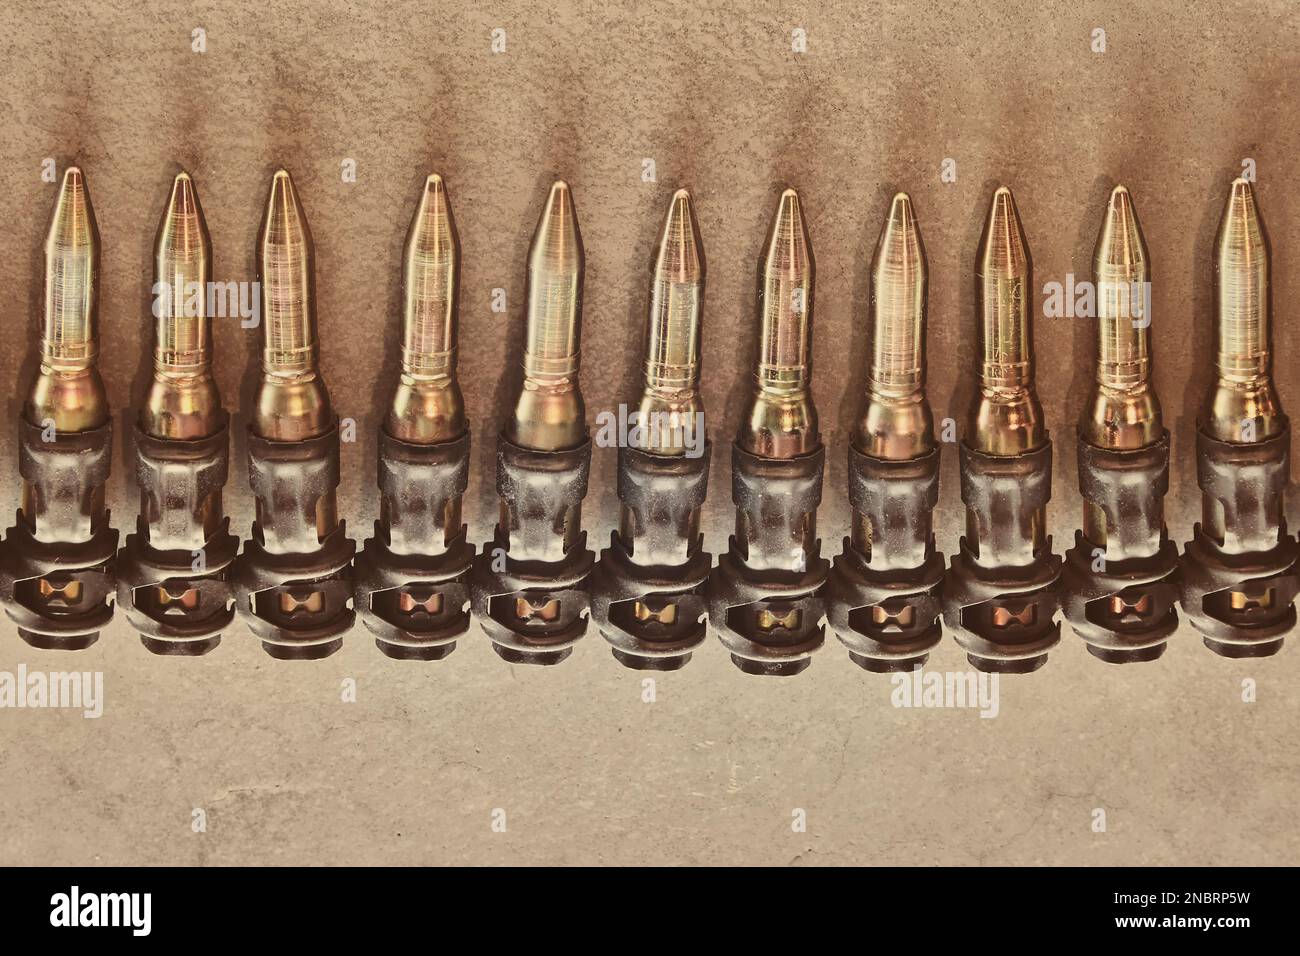 Image de style rétro d'une ceinture de munitions de mitrailleuse militaire Banque D'Images